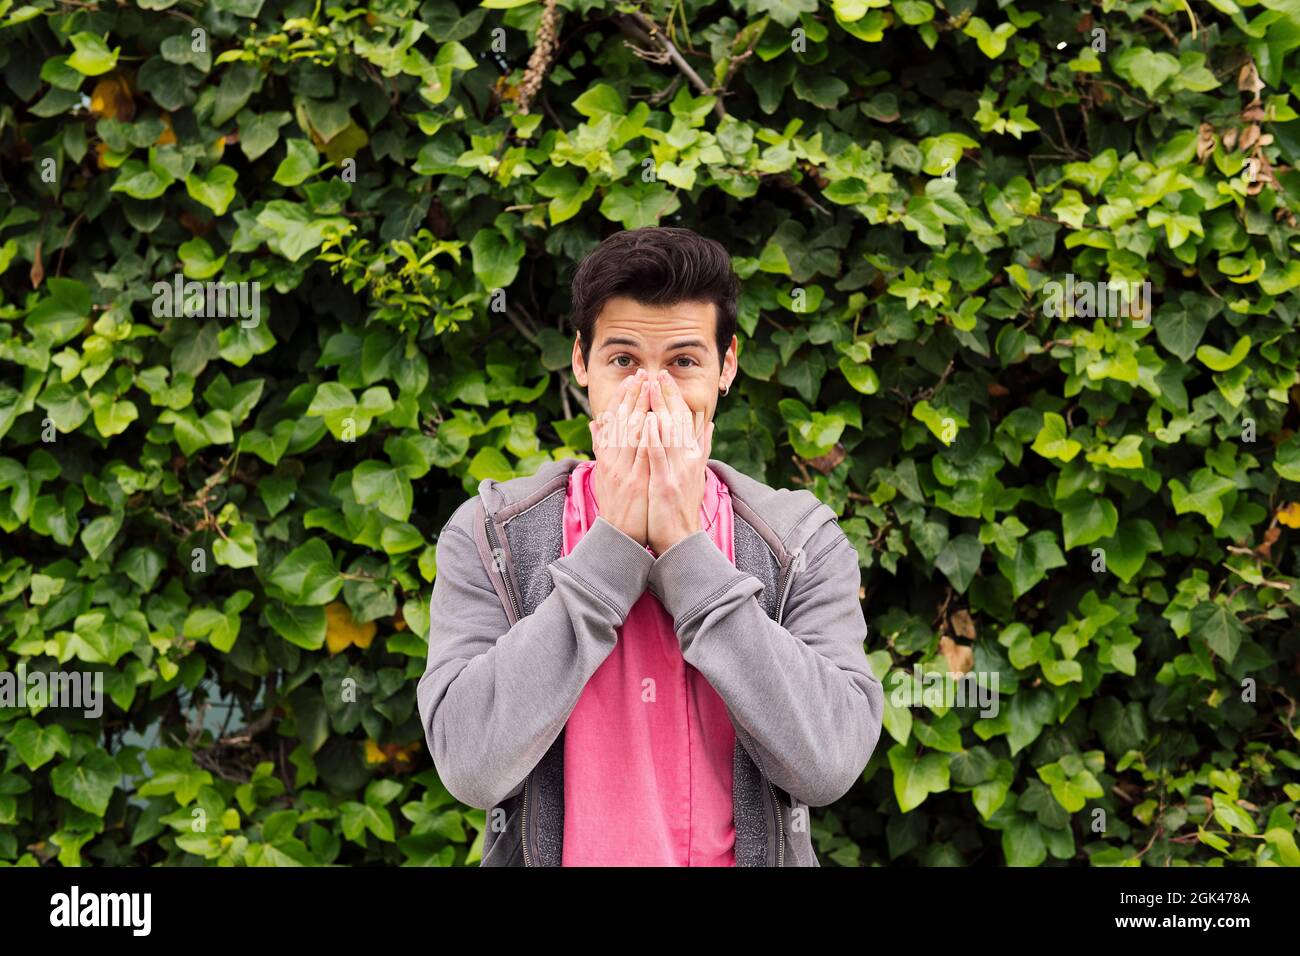 Überraschte Teenager, der seinen Mund mit den Händen auf einem grünen Hintergrund bedeckte, Konzept menschlicher Ausdrücke und Emotionen, Platz für Text kopieren Stockfoto